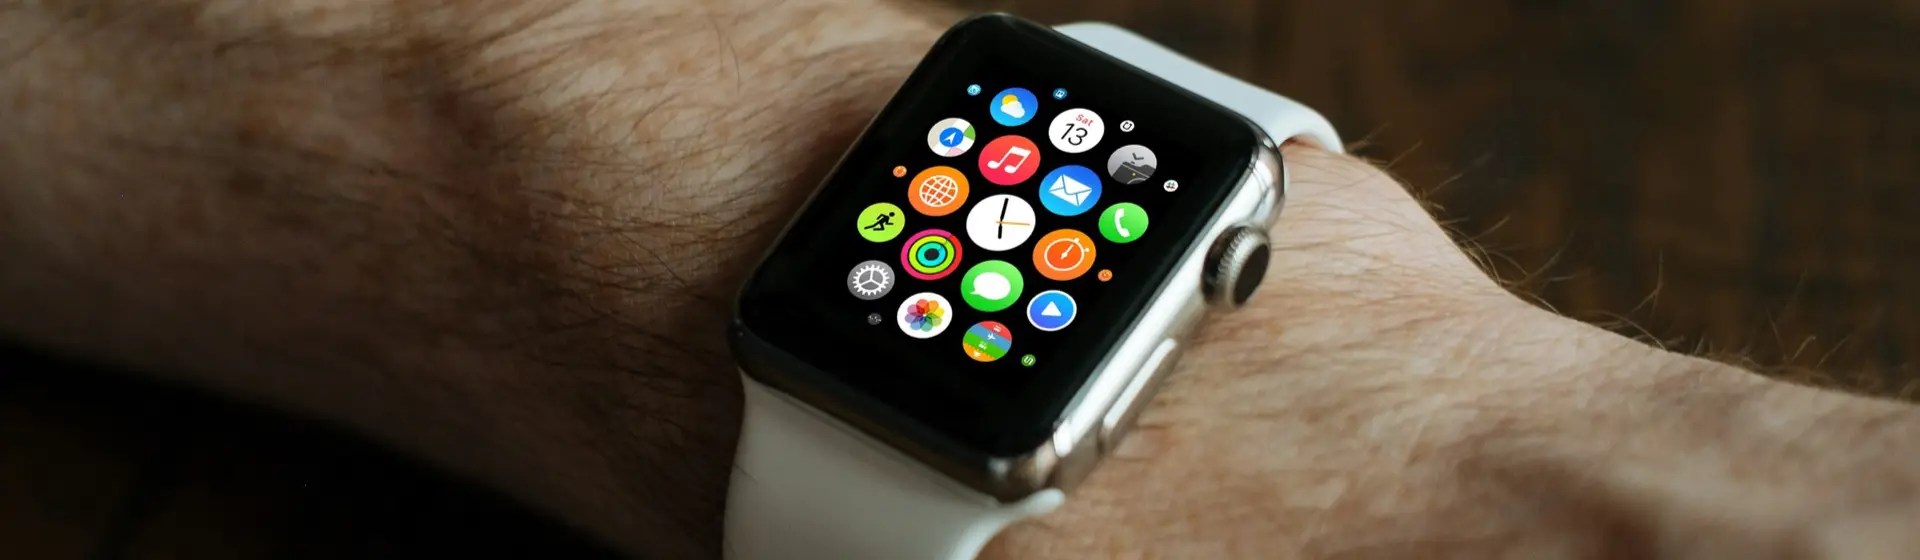 Apple Watch 3 prata com pulseira branca no pulso de homem